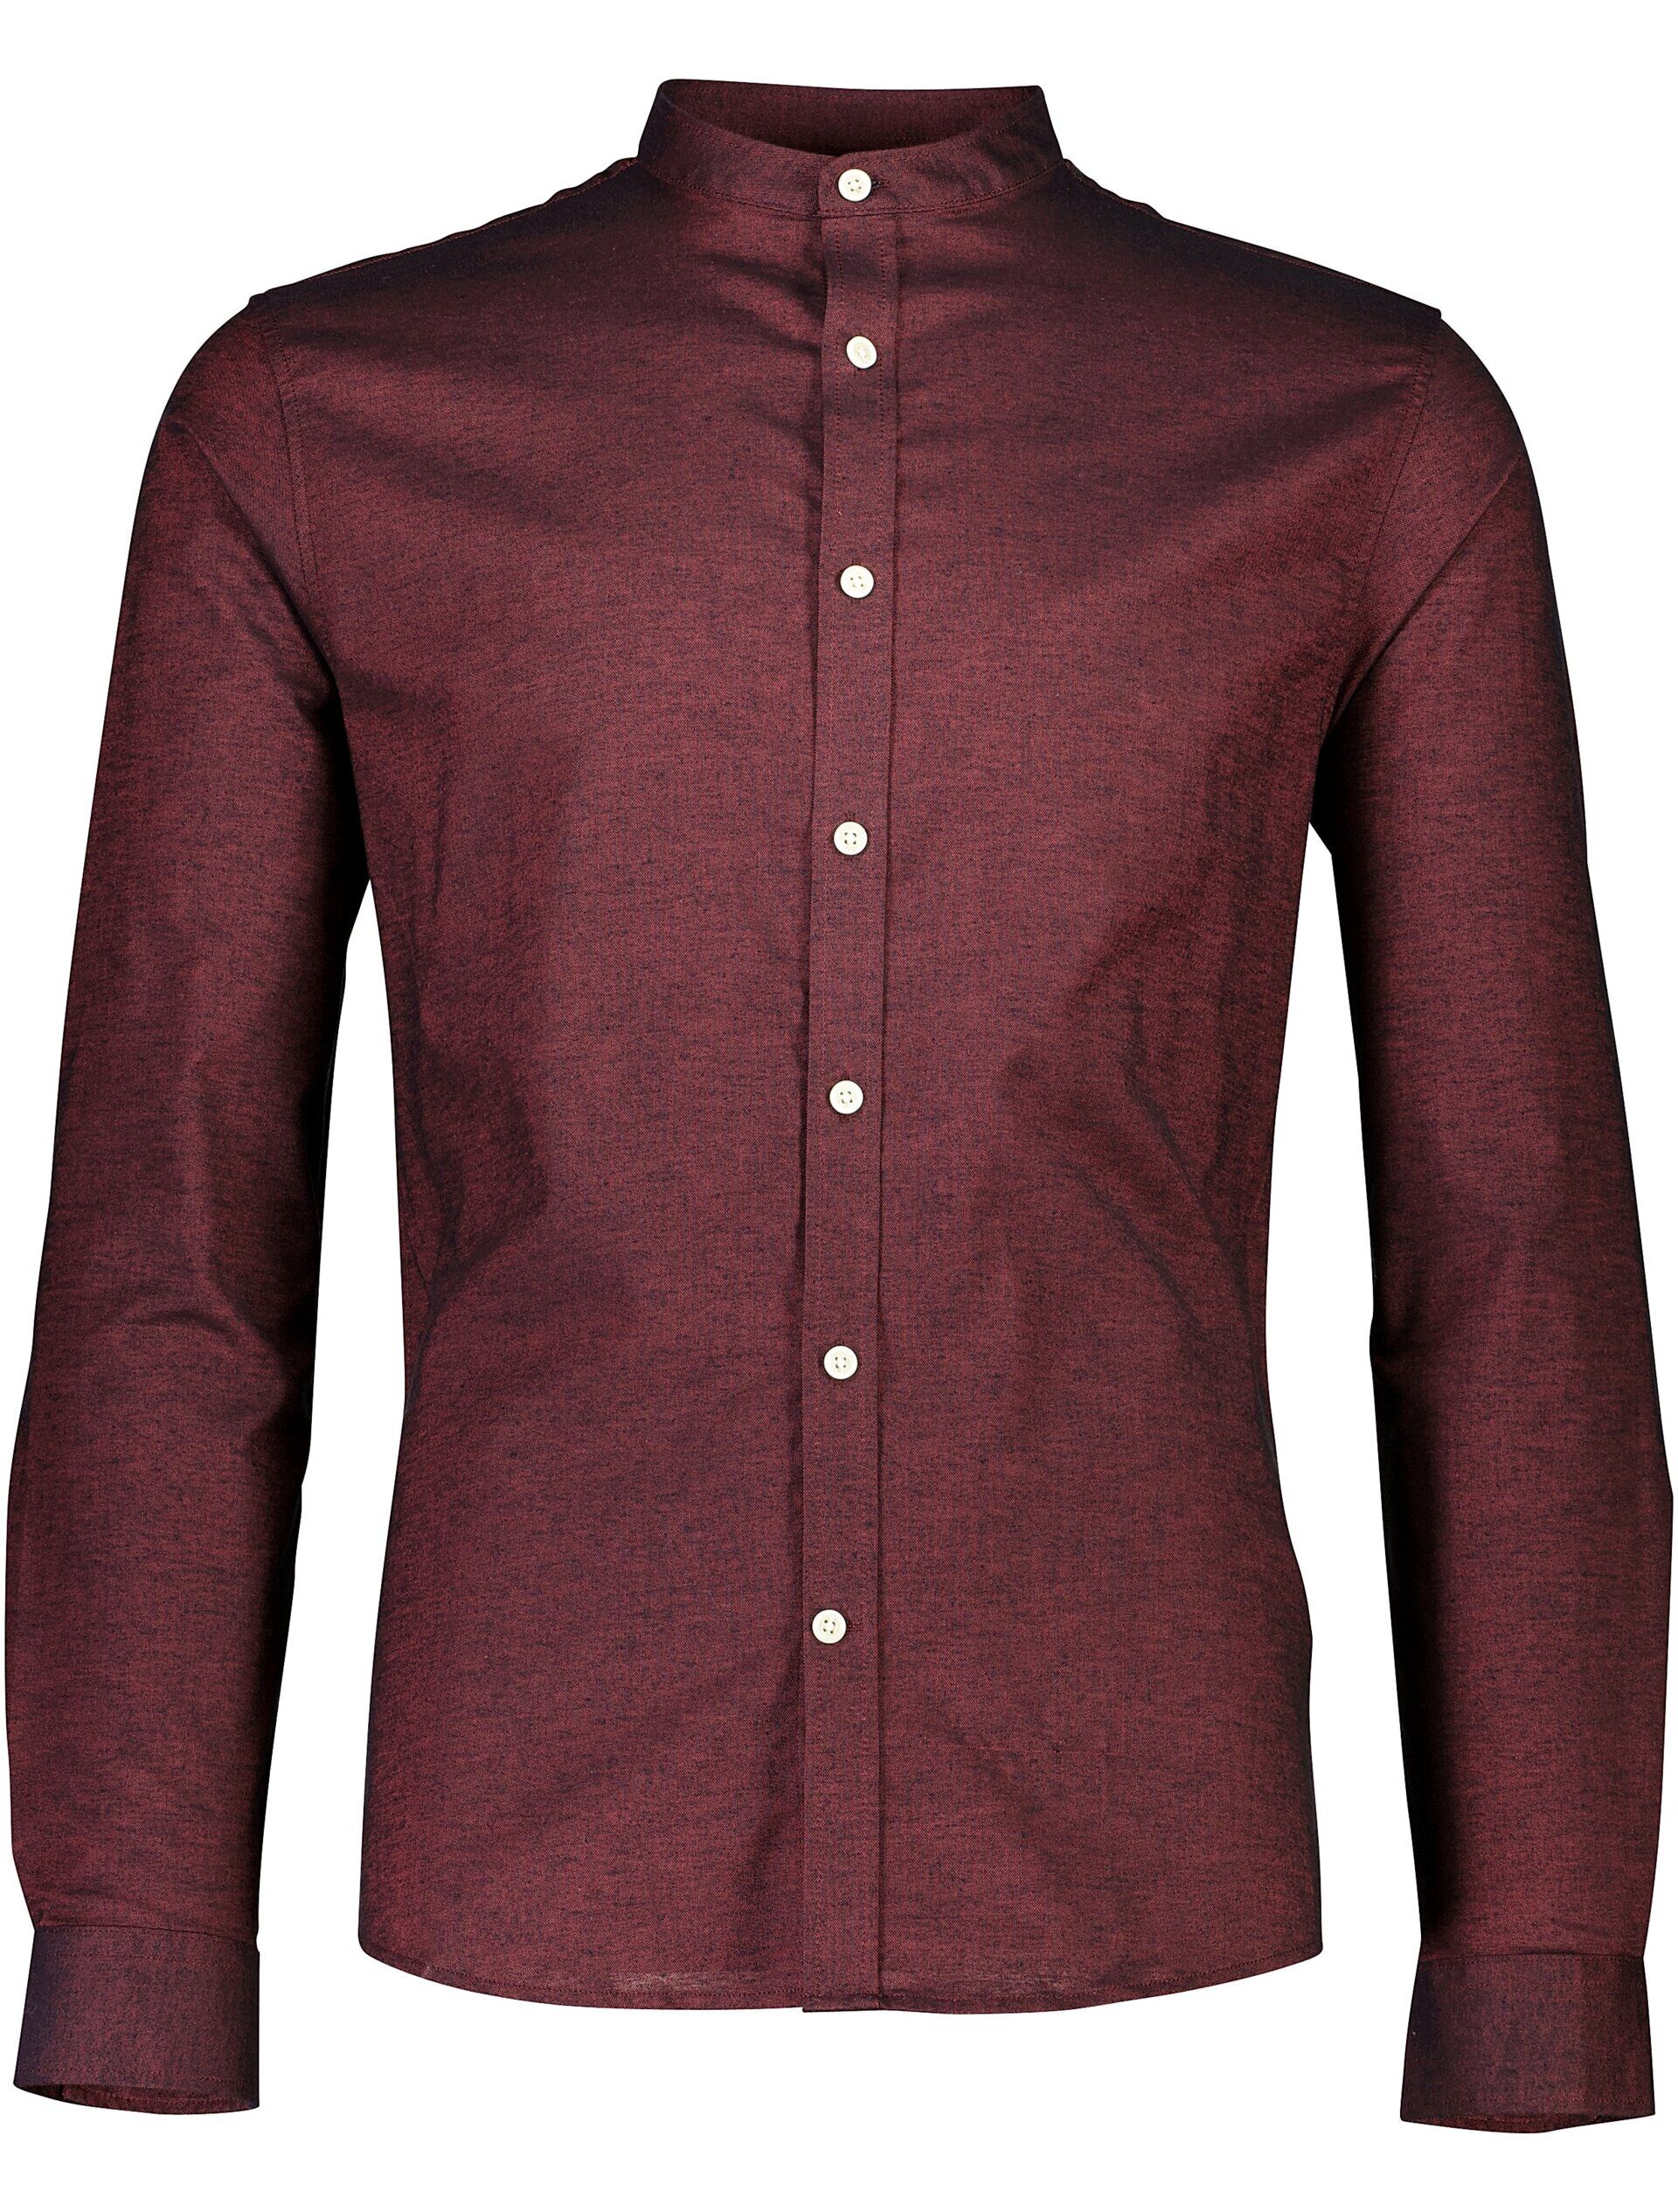 Oxford overhemd 30-203174A